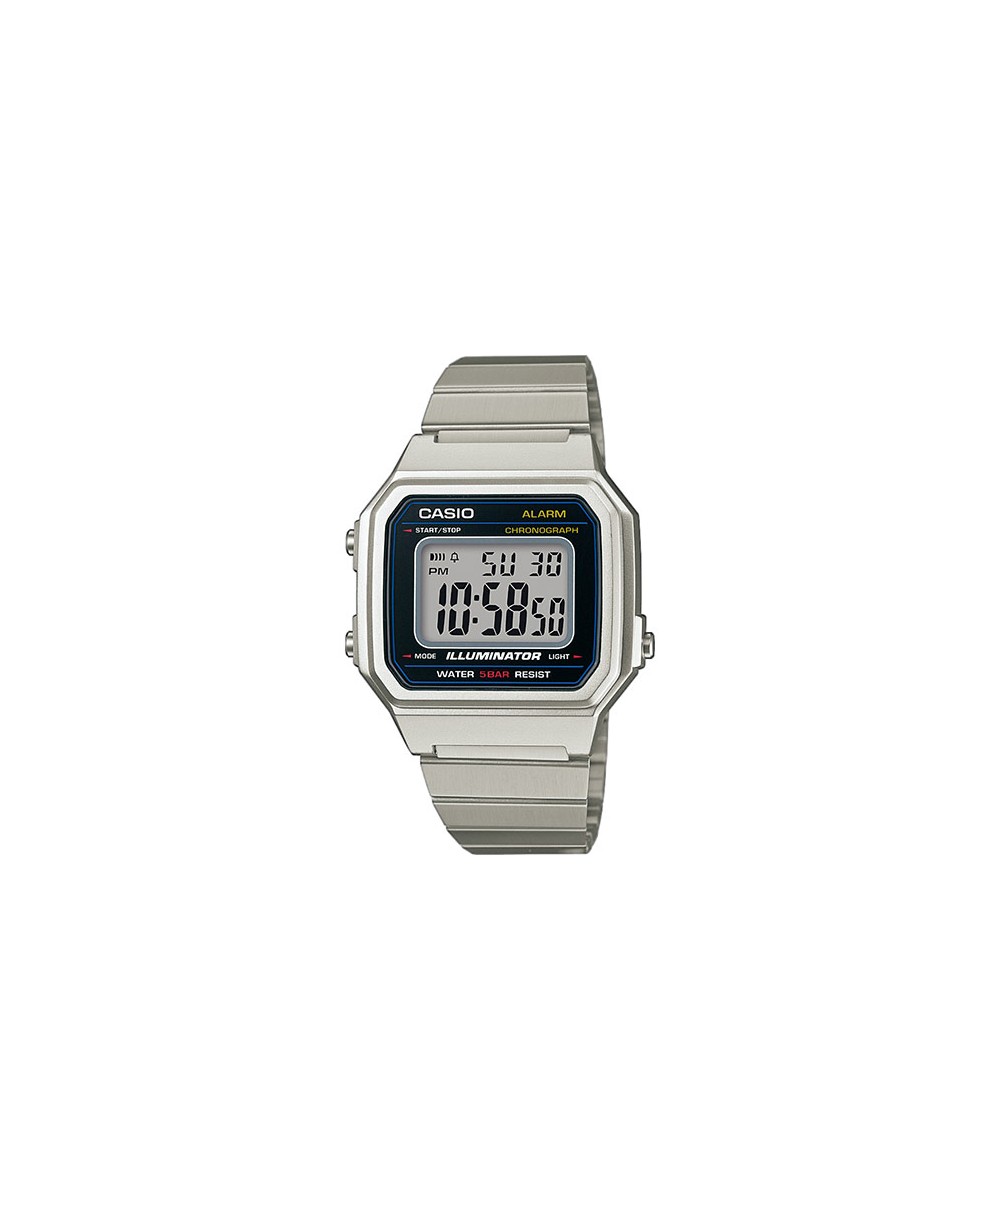 Reloj Casio B650WD-1AEF